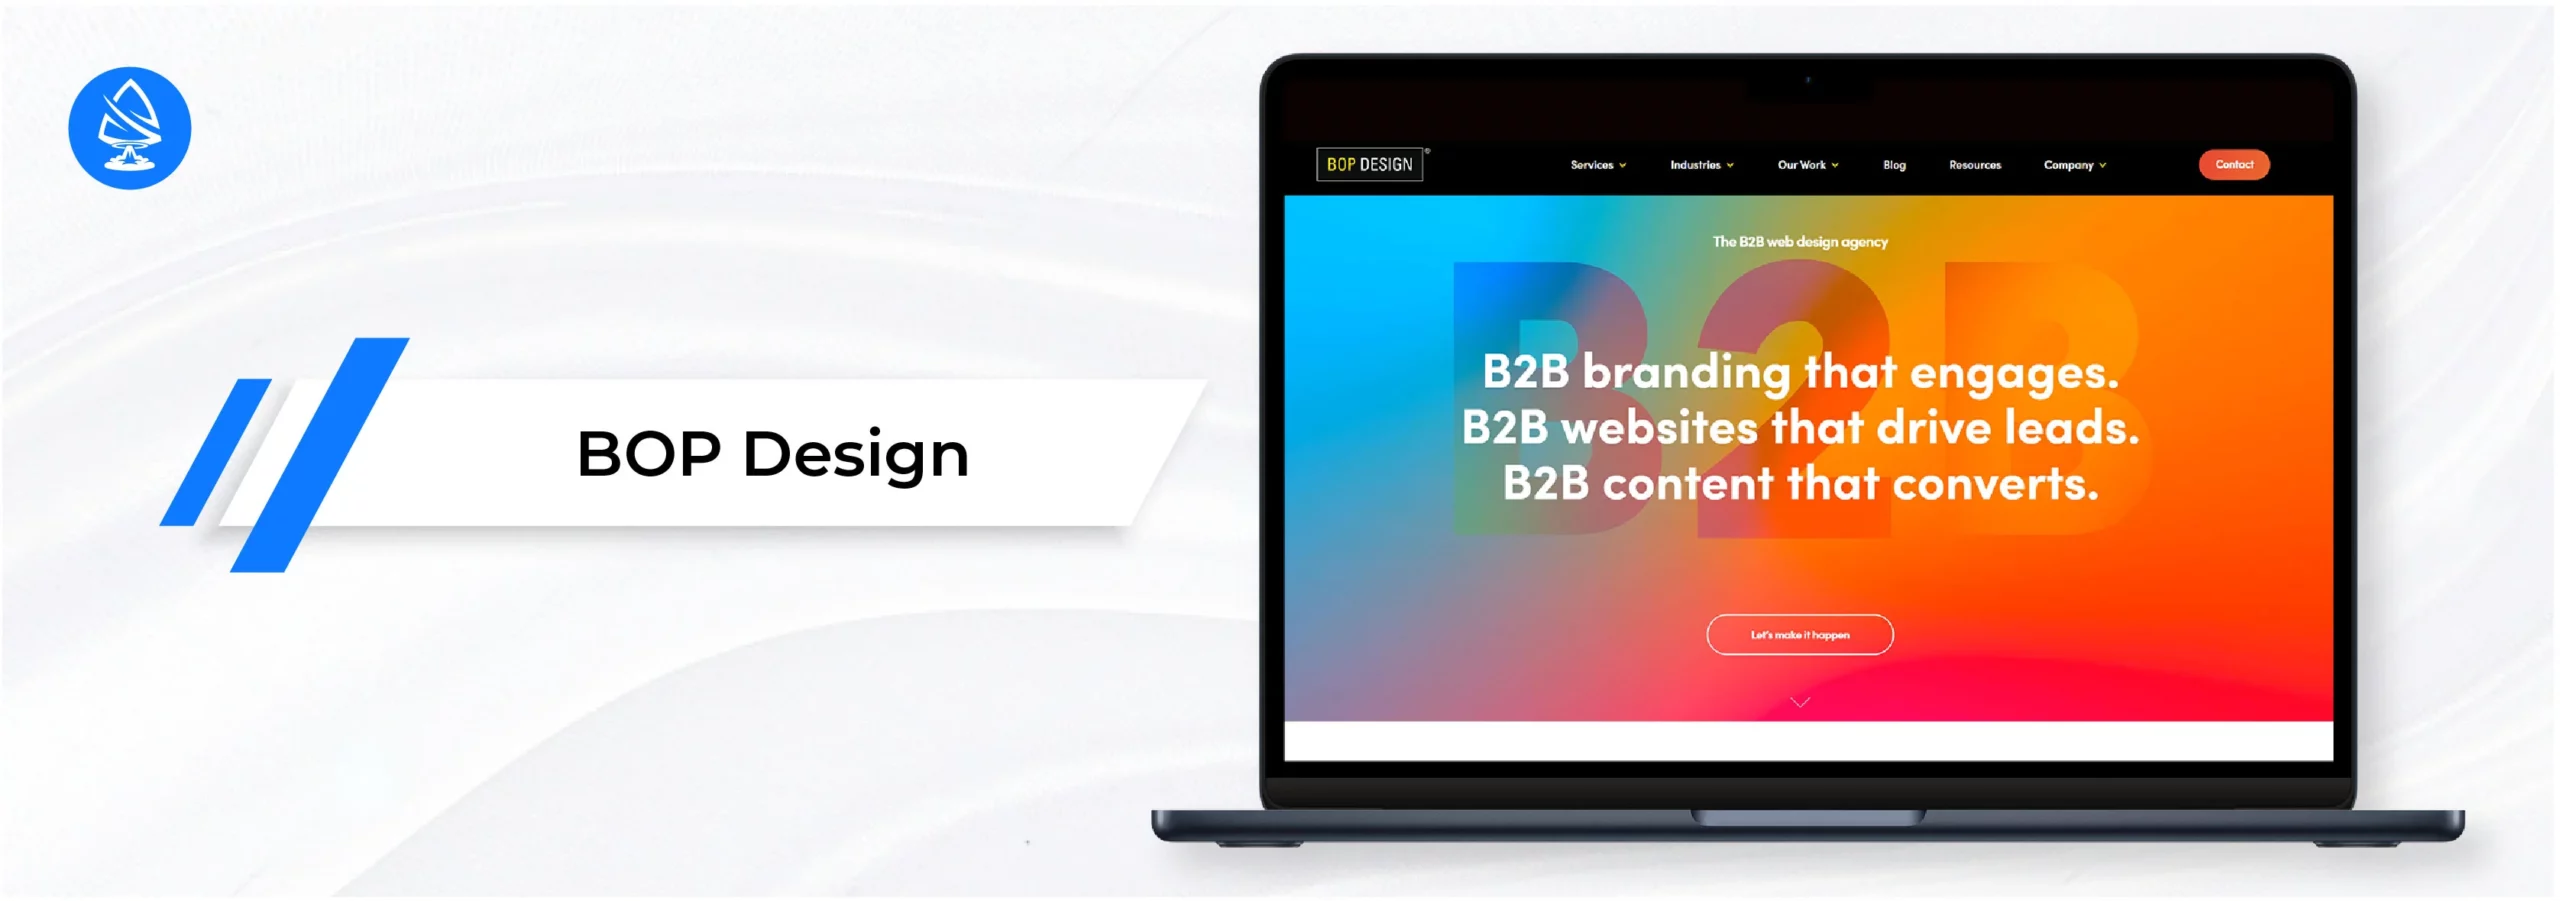 BOP Design - wordpress website design agencies